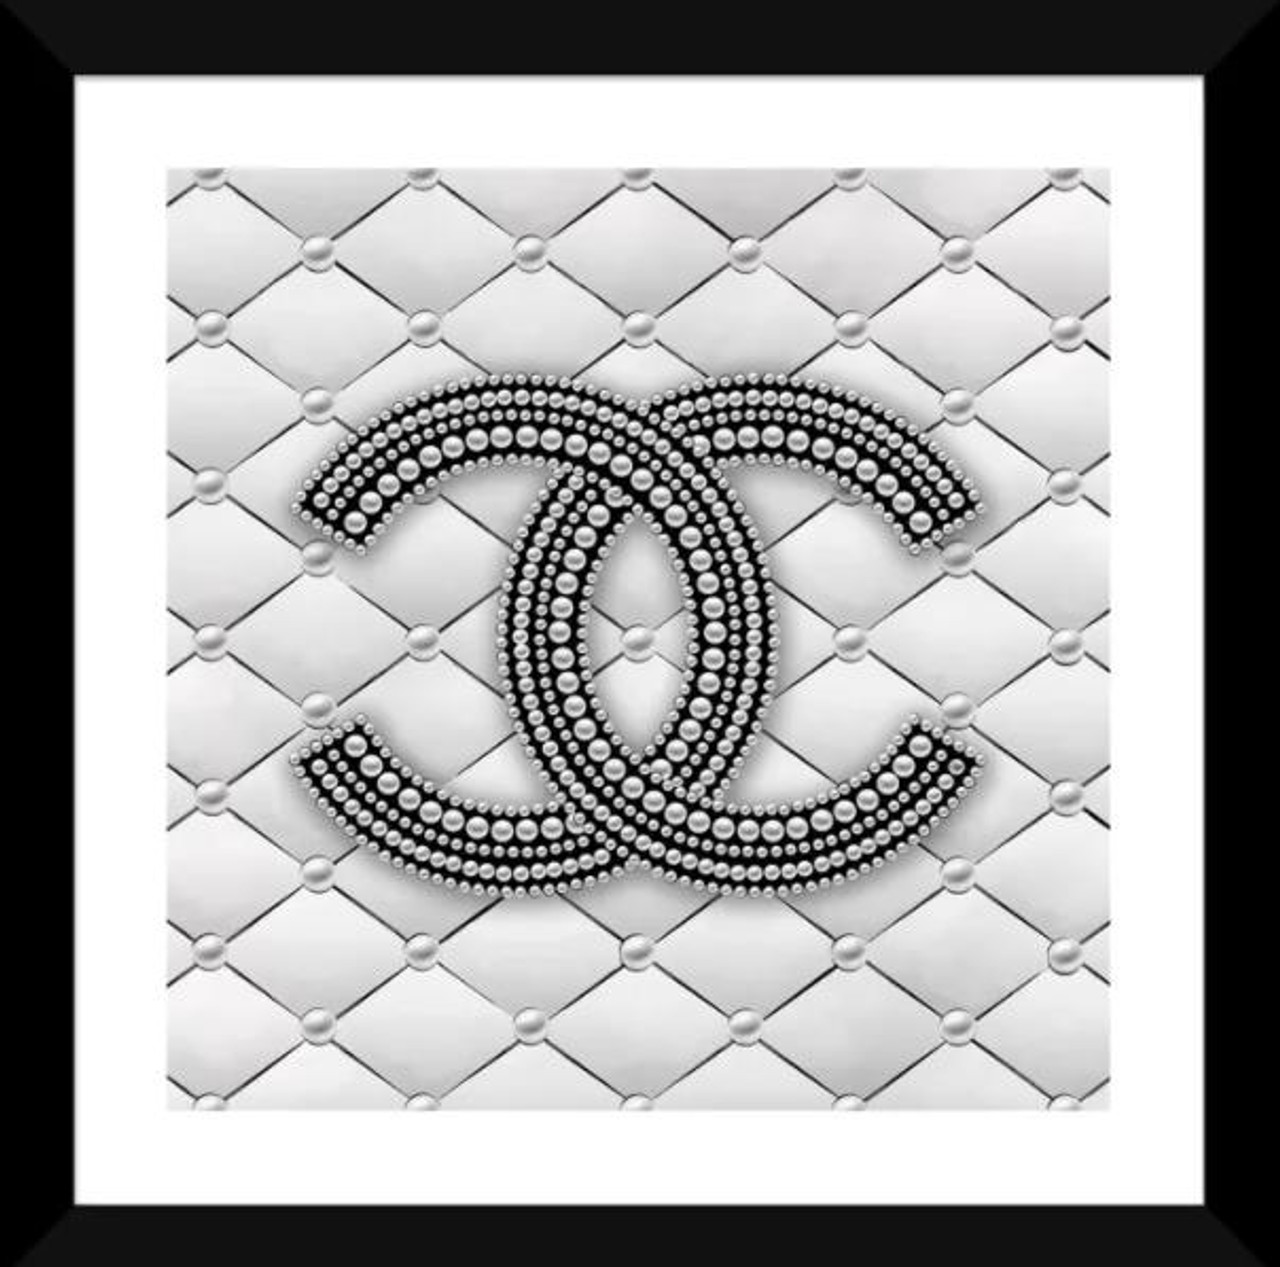 Chanel Pearl Logo Framed Art